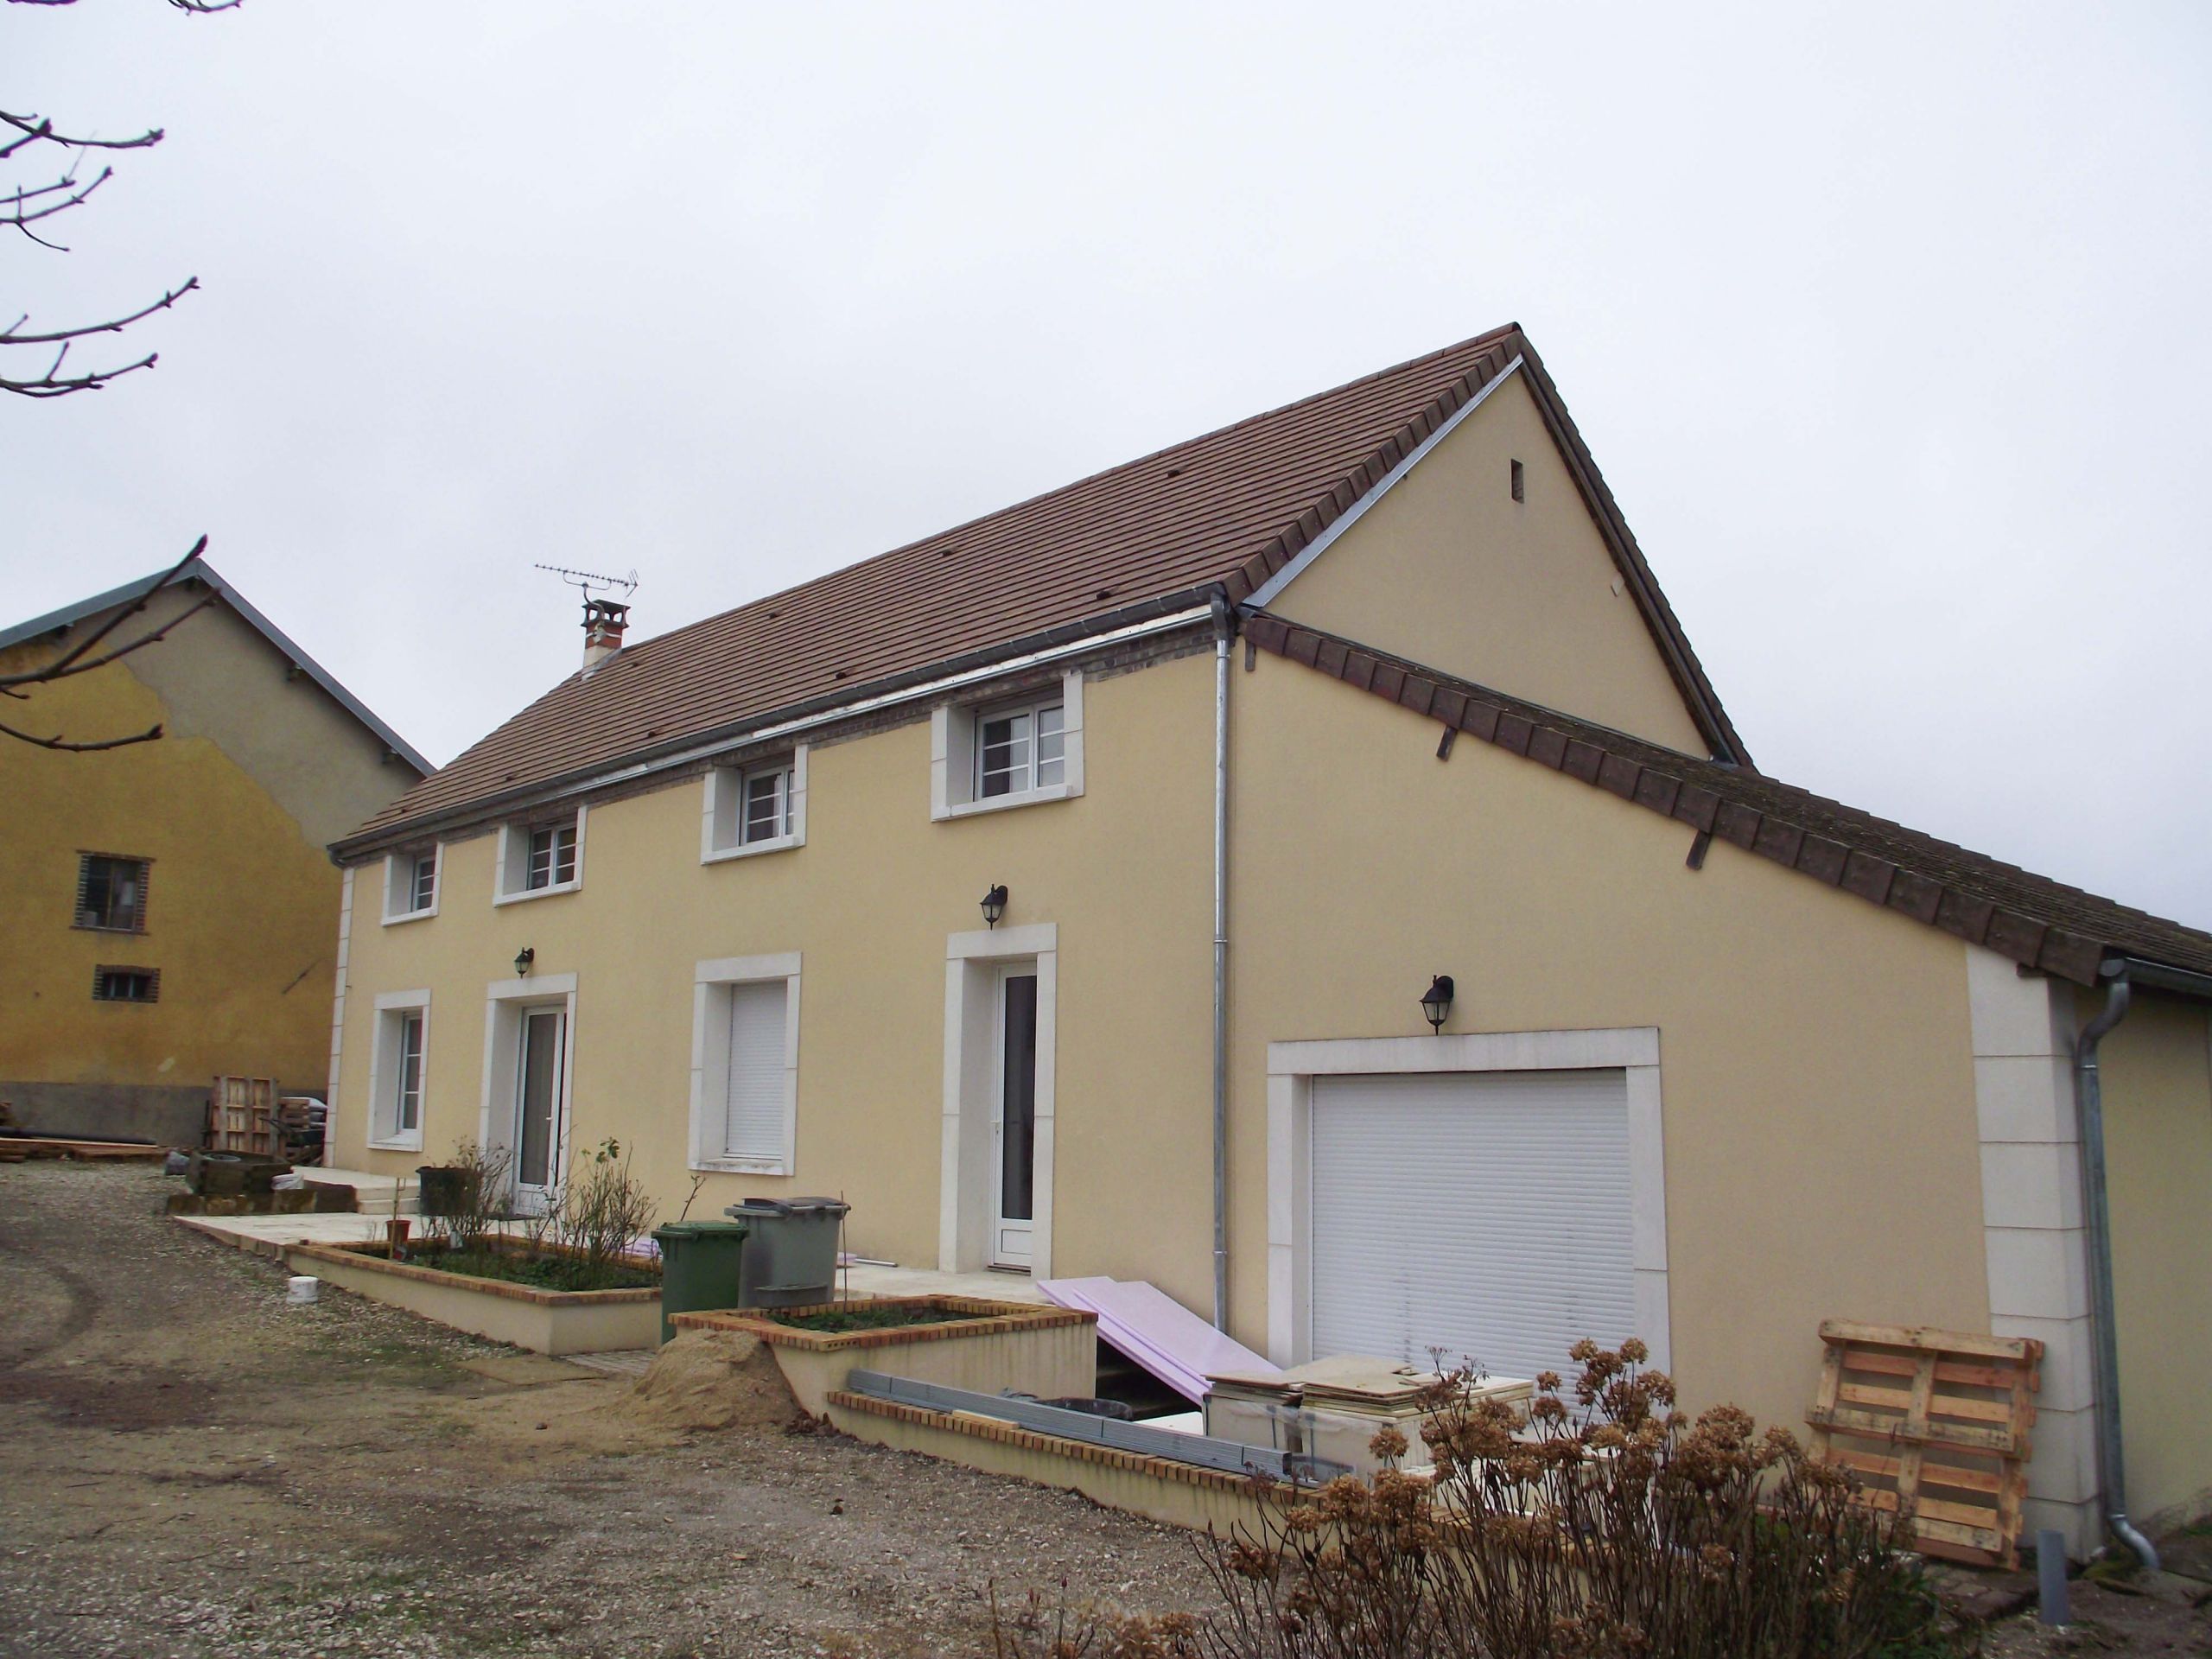 Couverture Zinguerie maison - Charpentier maisons ossature bois Bourgogne Franche Comté